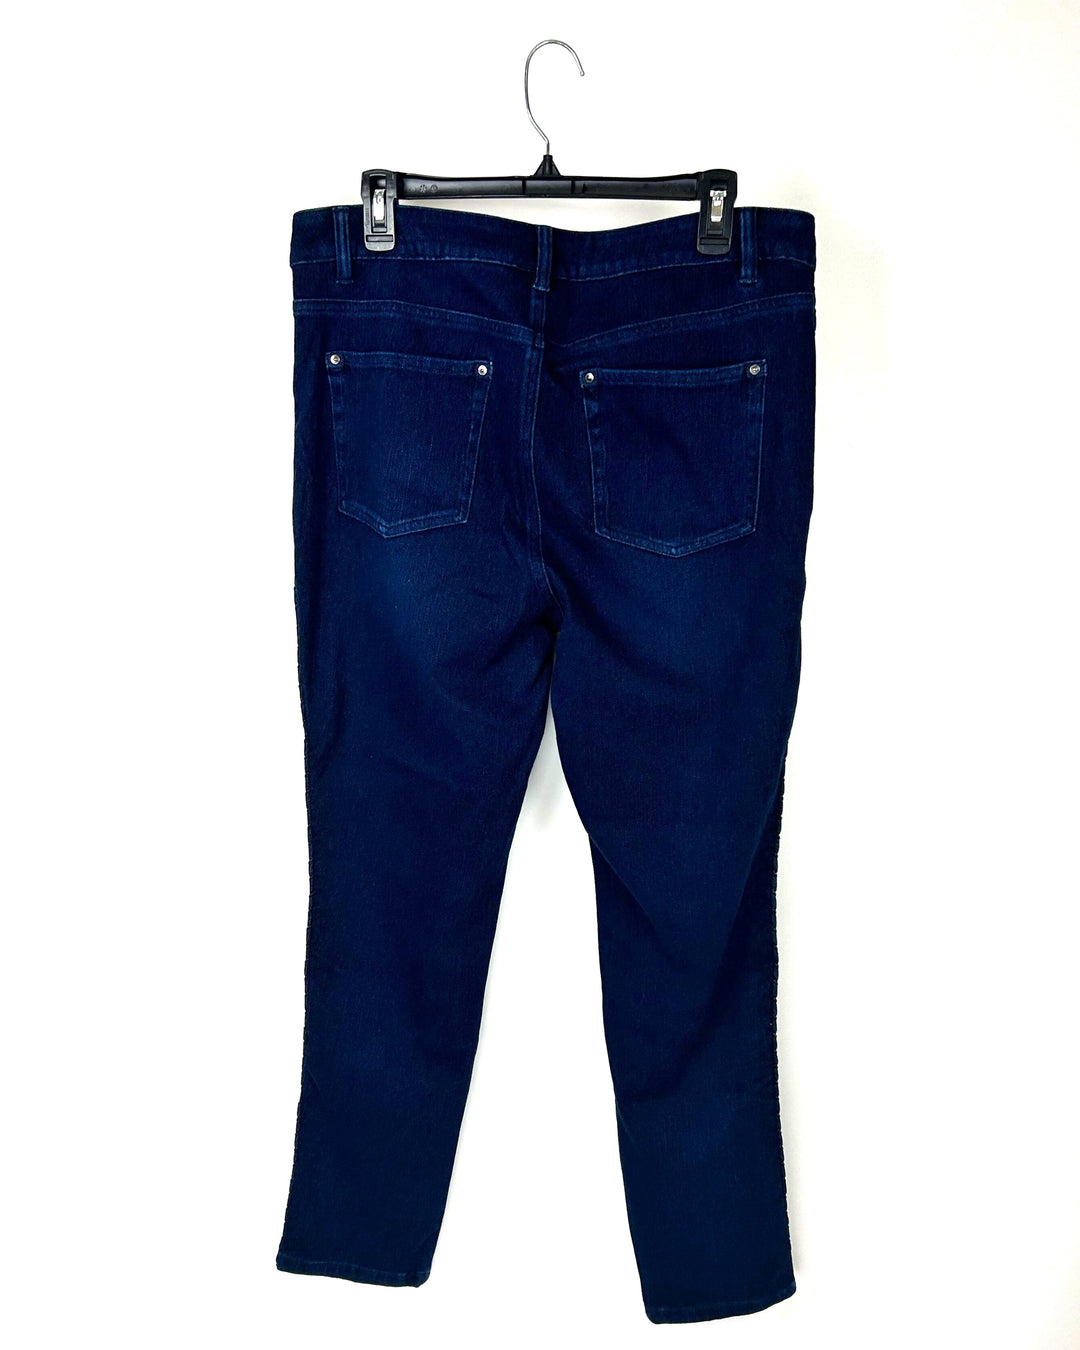 Dark Wash Braid Denim Pants - Size 12